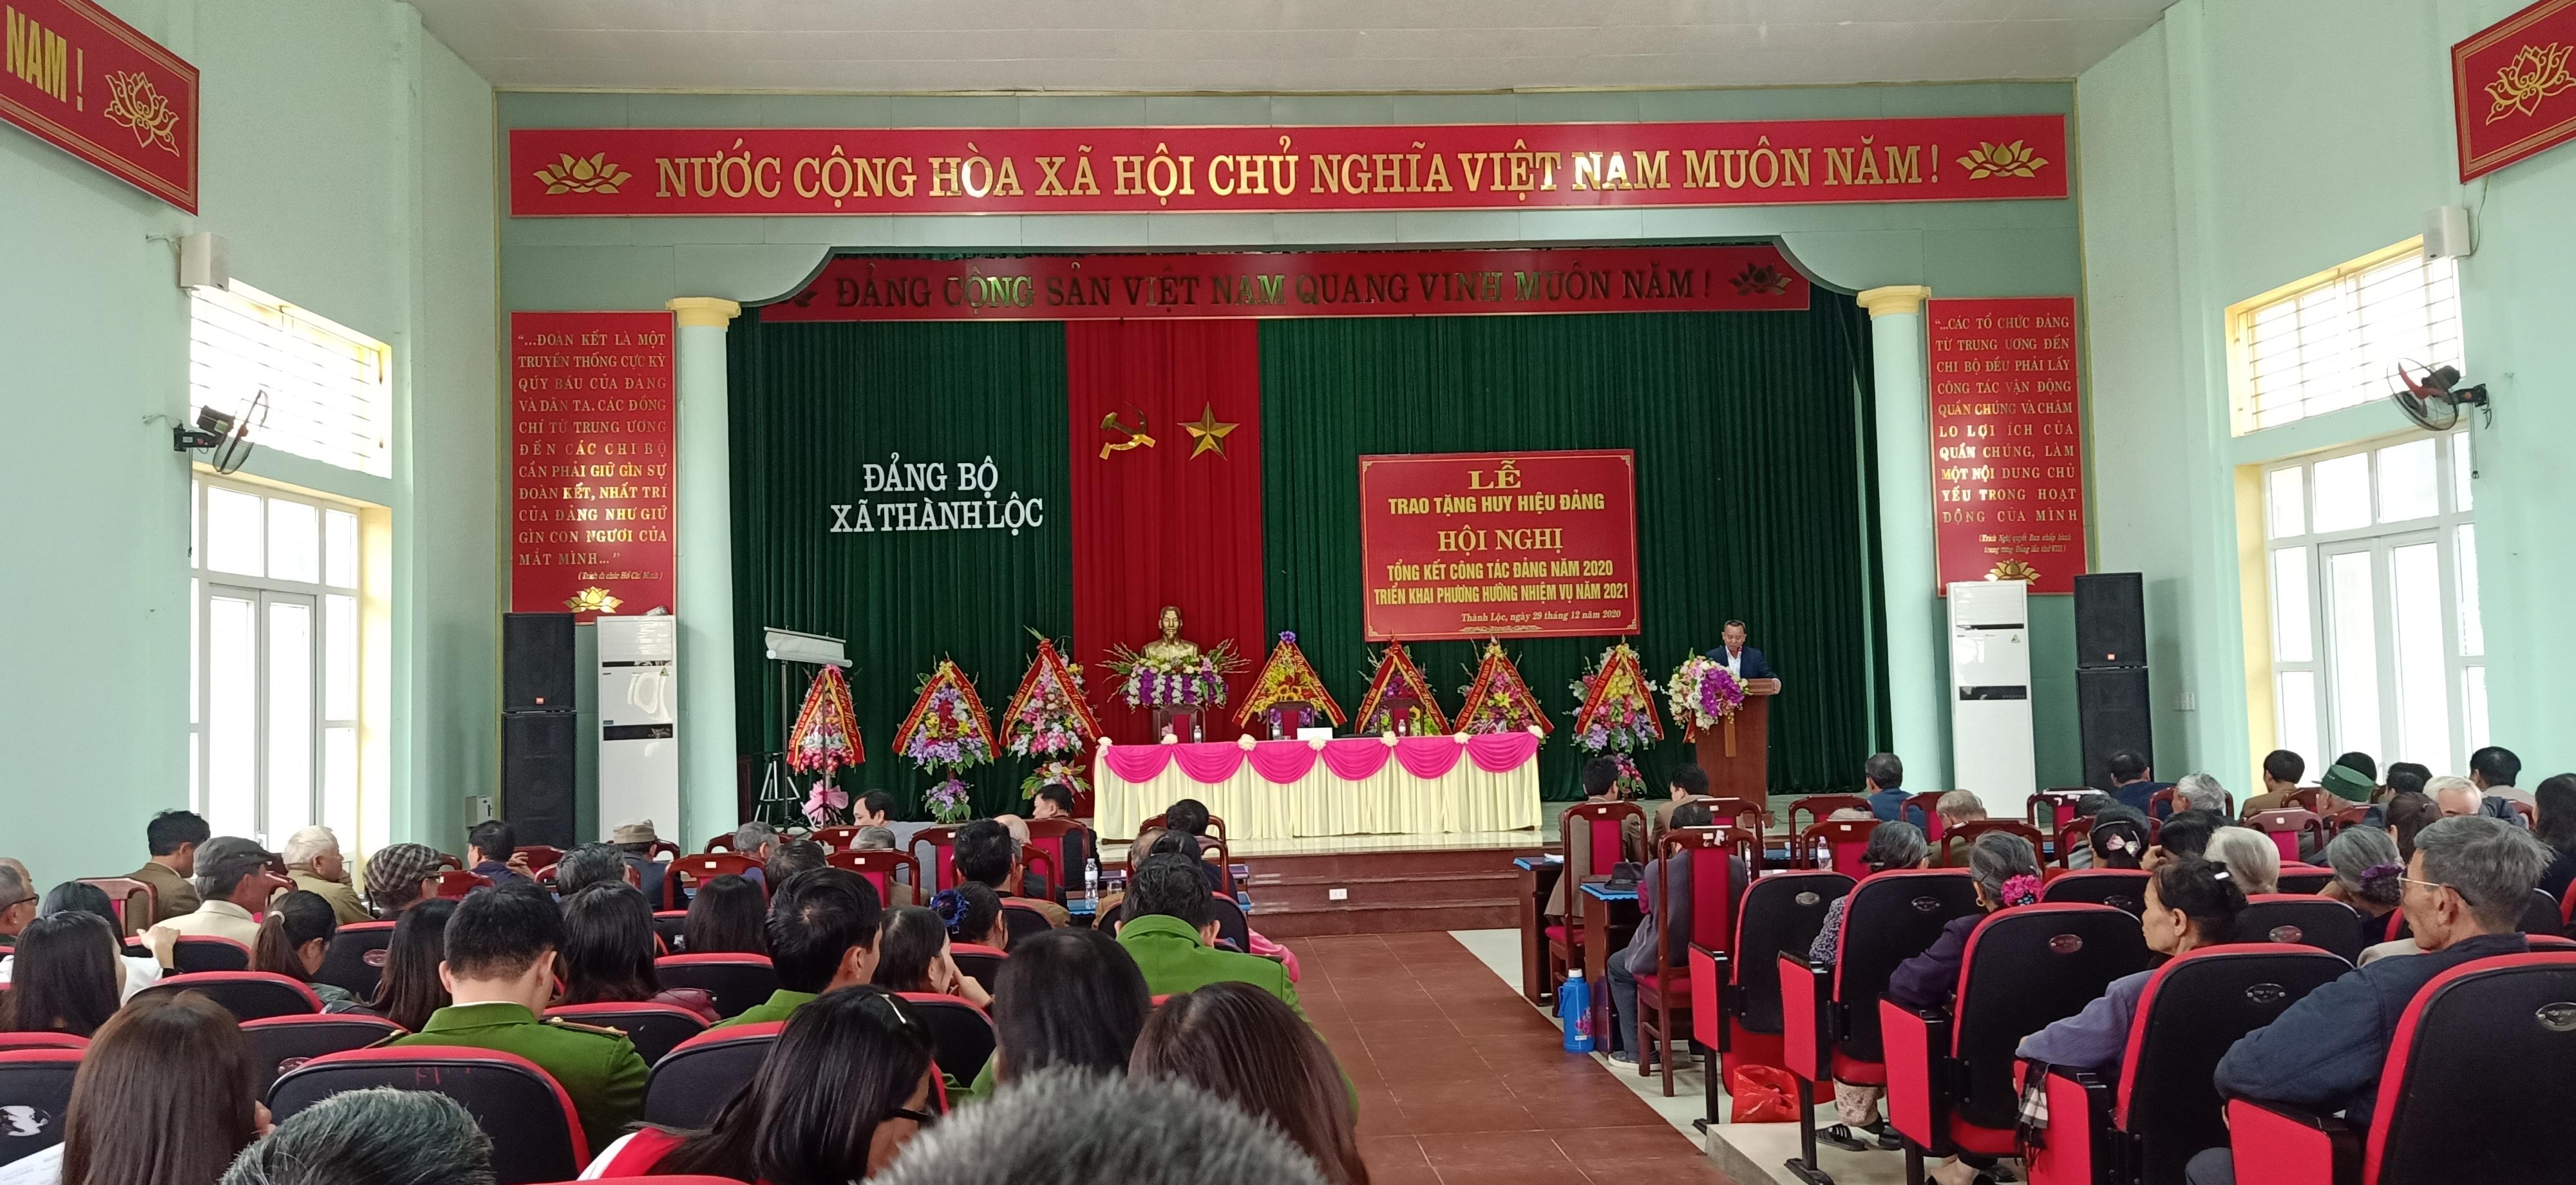 Đảng bộ xã Thành Lộc tổ chức Hội nghị Tổng kết công tác Đảng năm 2020 và Triển khai phương hướng, nhiệm vụ  năm 2021